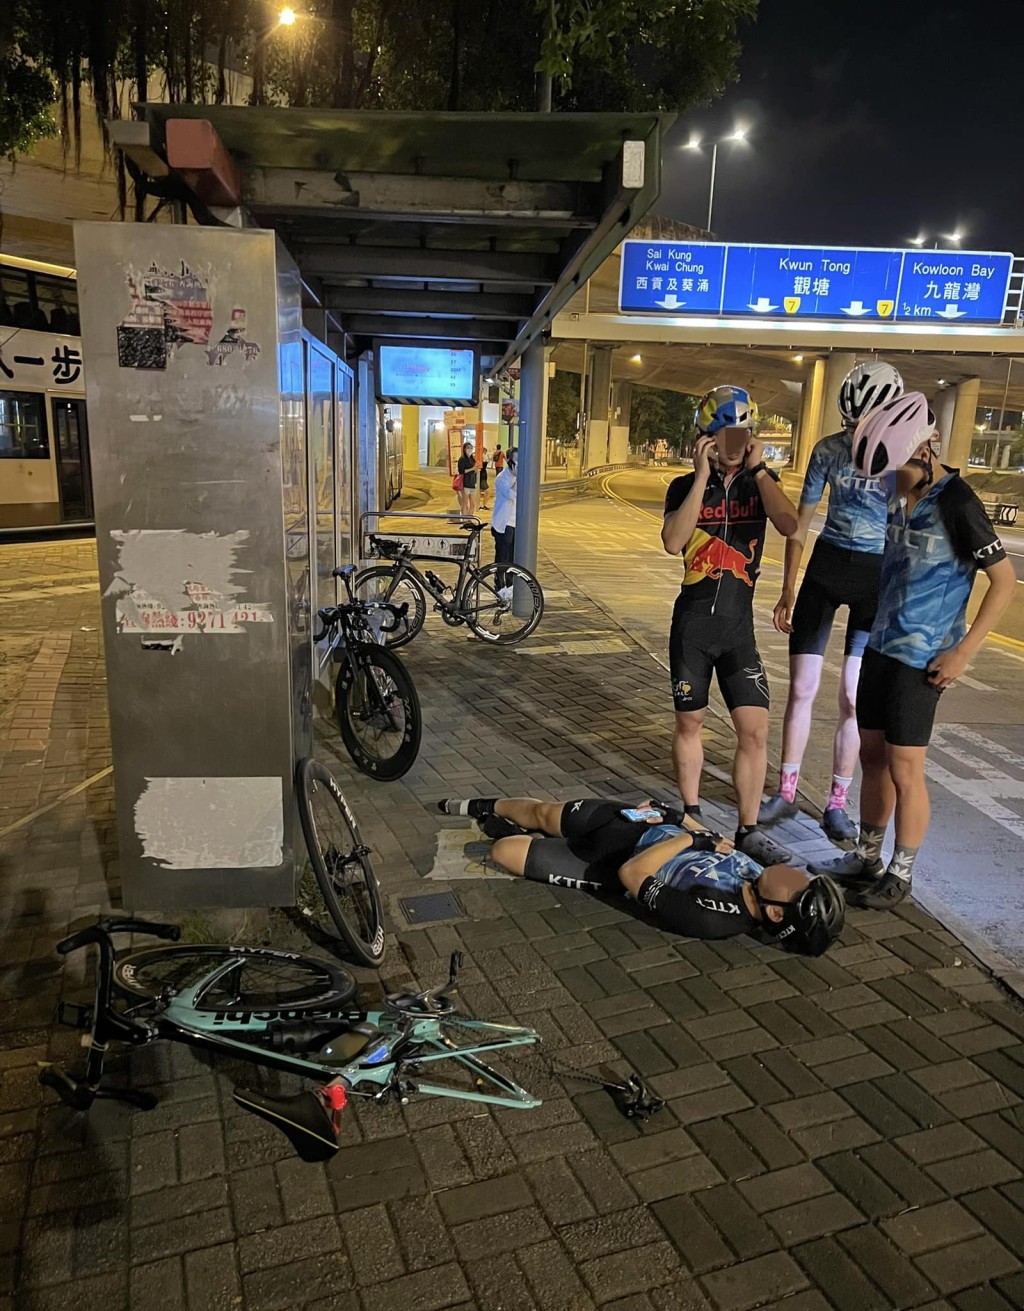 有的士驶至彩虹邨巴士站附近时撞及一名单车手，其后不顾而去。黄建东fb图片